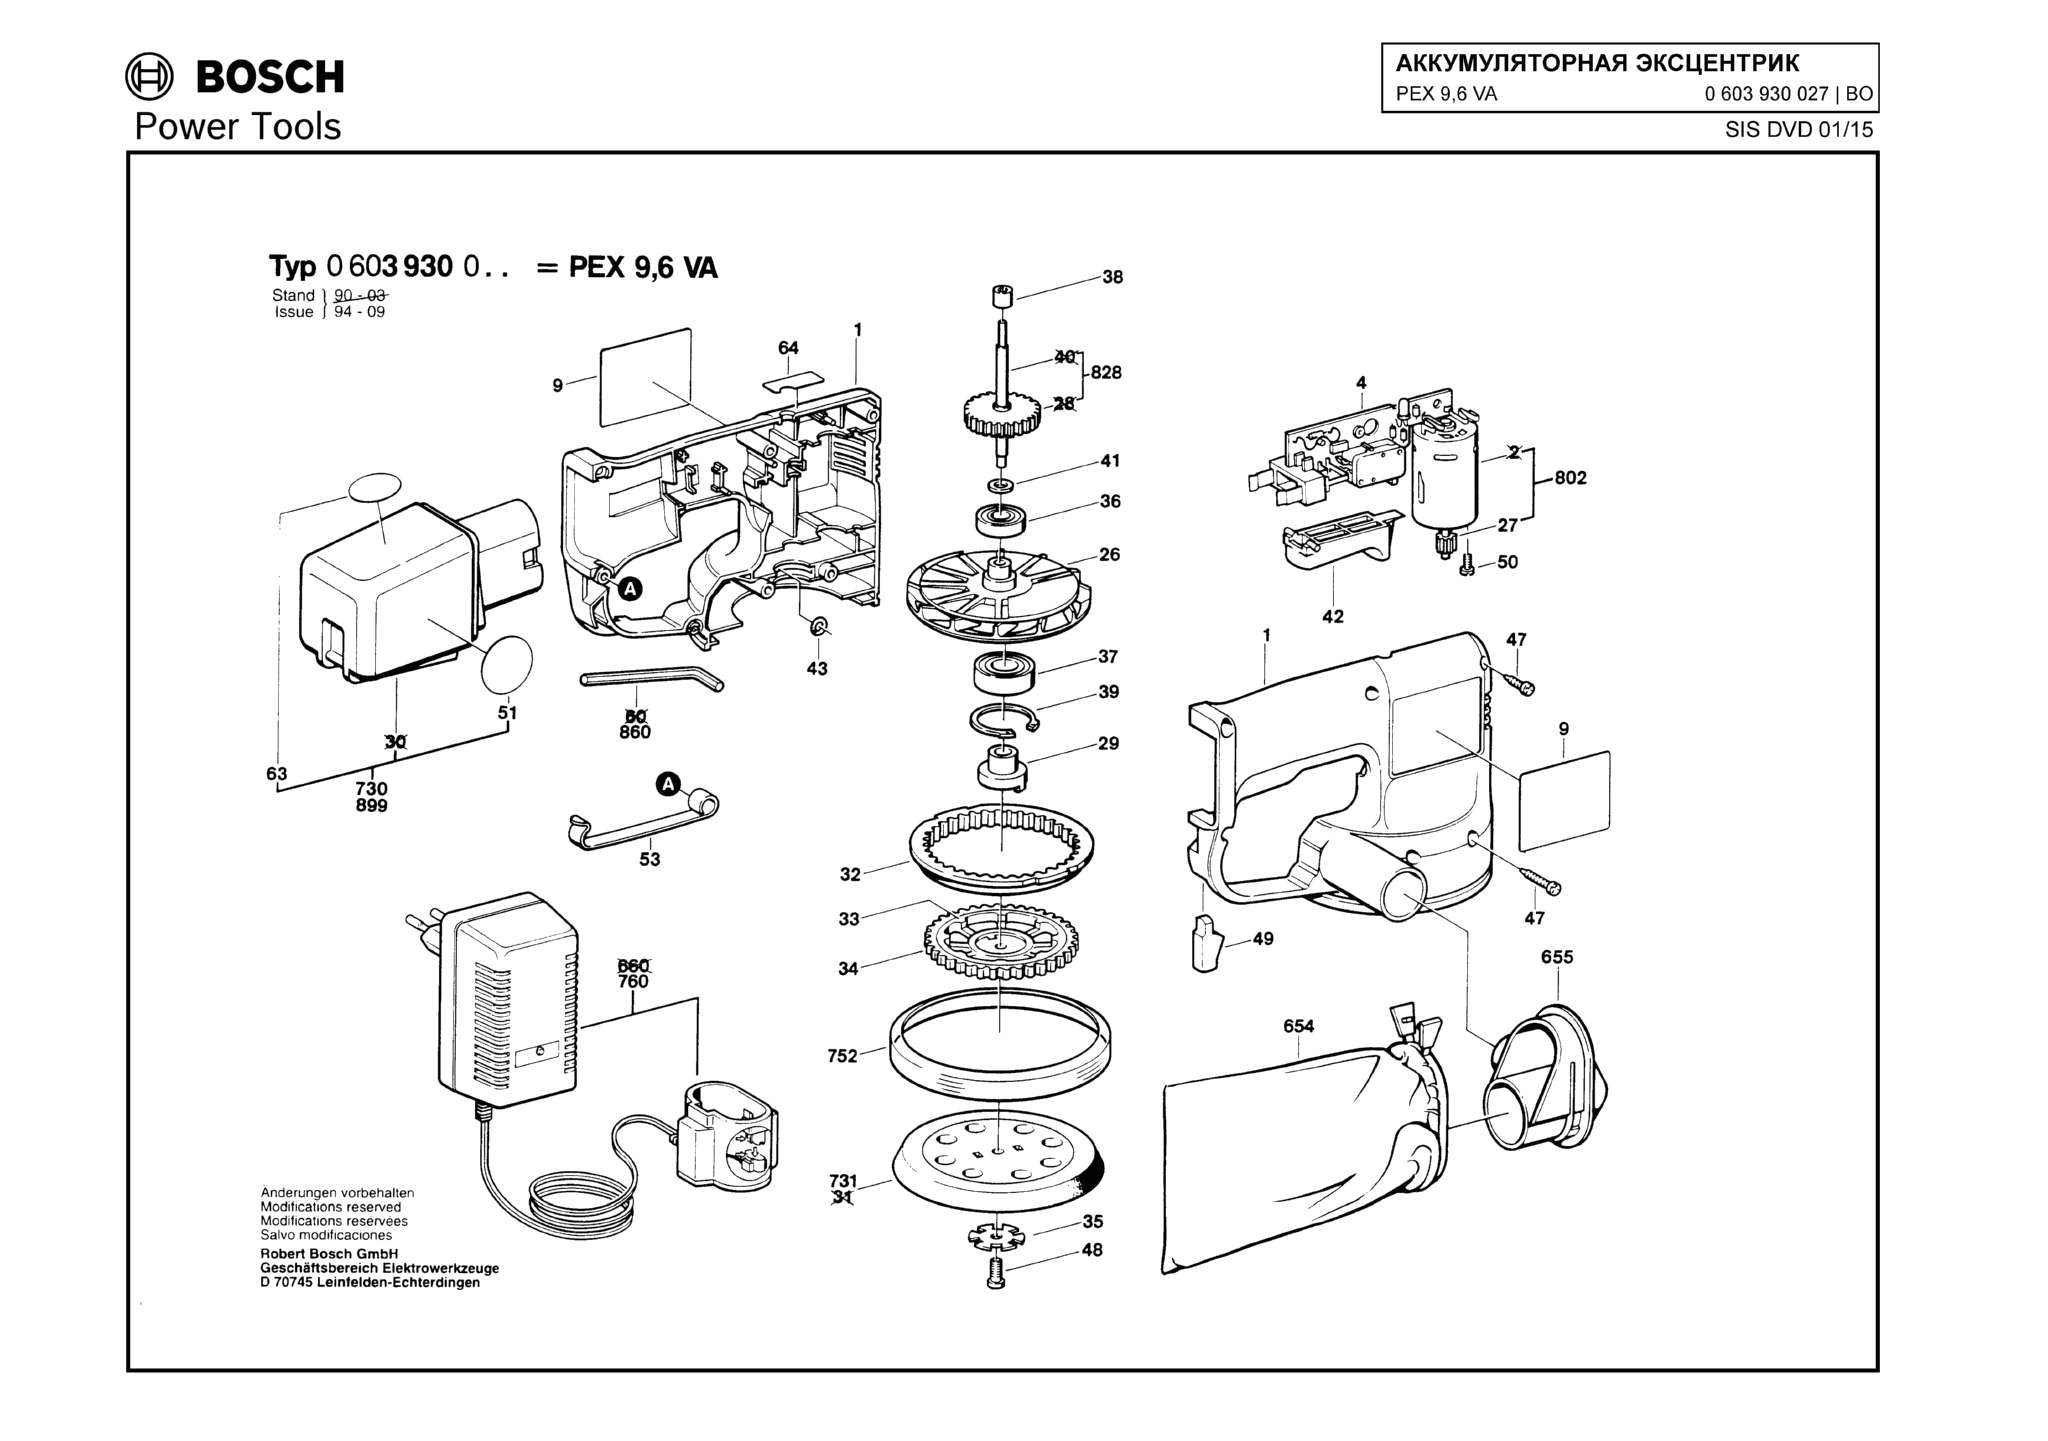 Запчасти, схема и деталировка Bosch PEX 9,6 VA (ТИП 0603930027)